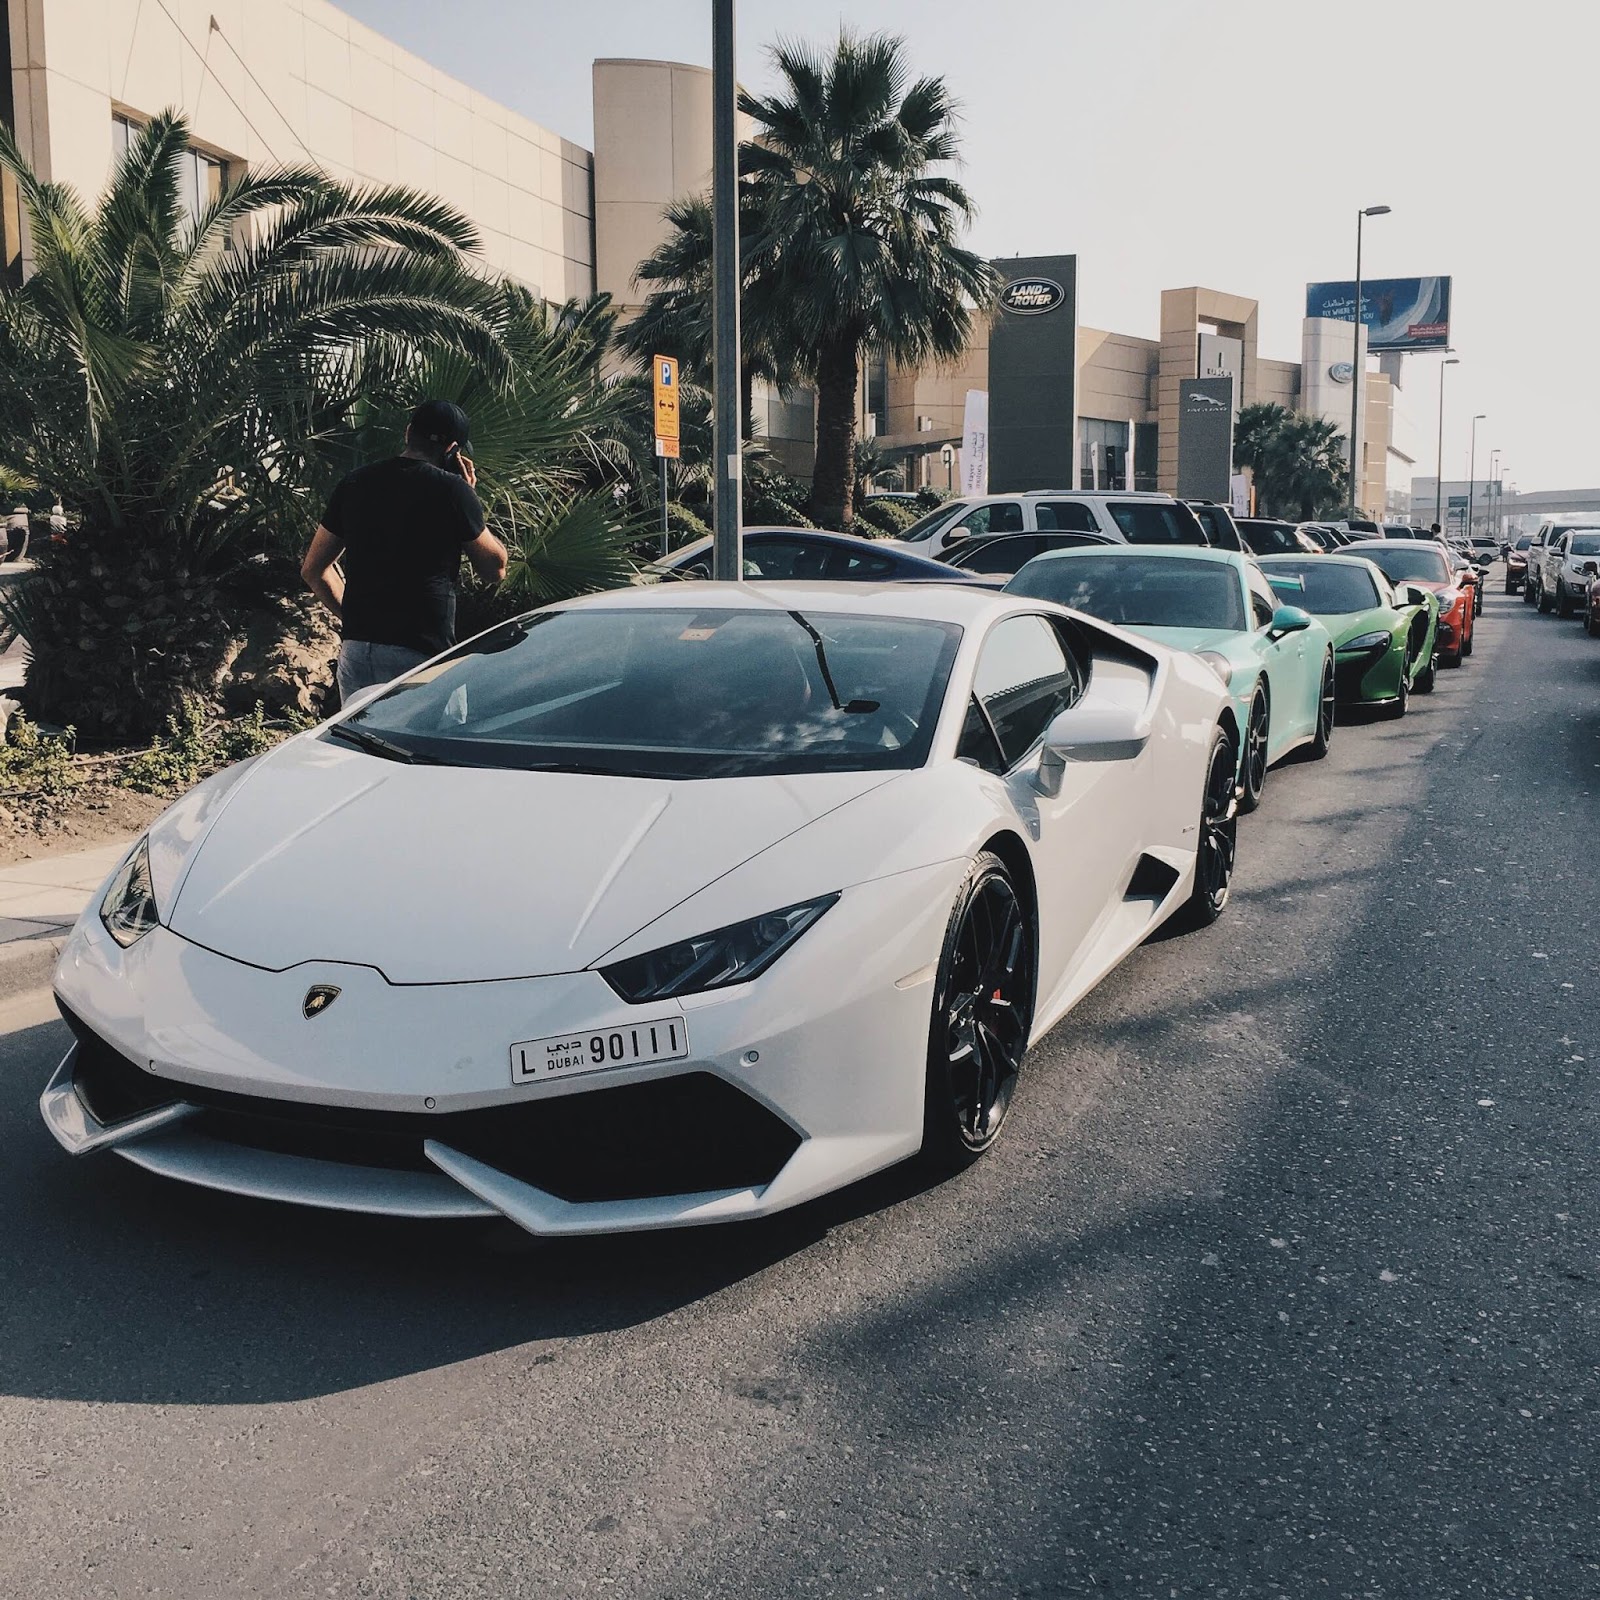 Дубайские машины. Суперкары в Дубае. Дубайский суперкар. Дубайские машины крутые. Крутые Тачки в Дубае.